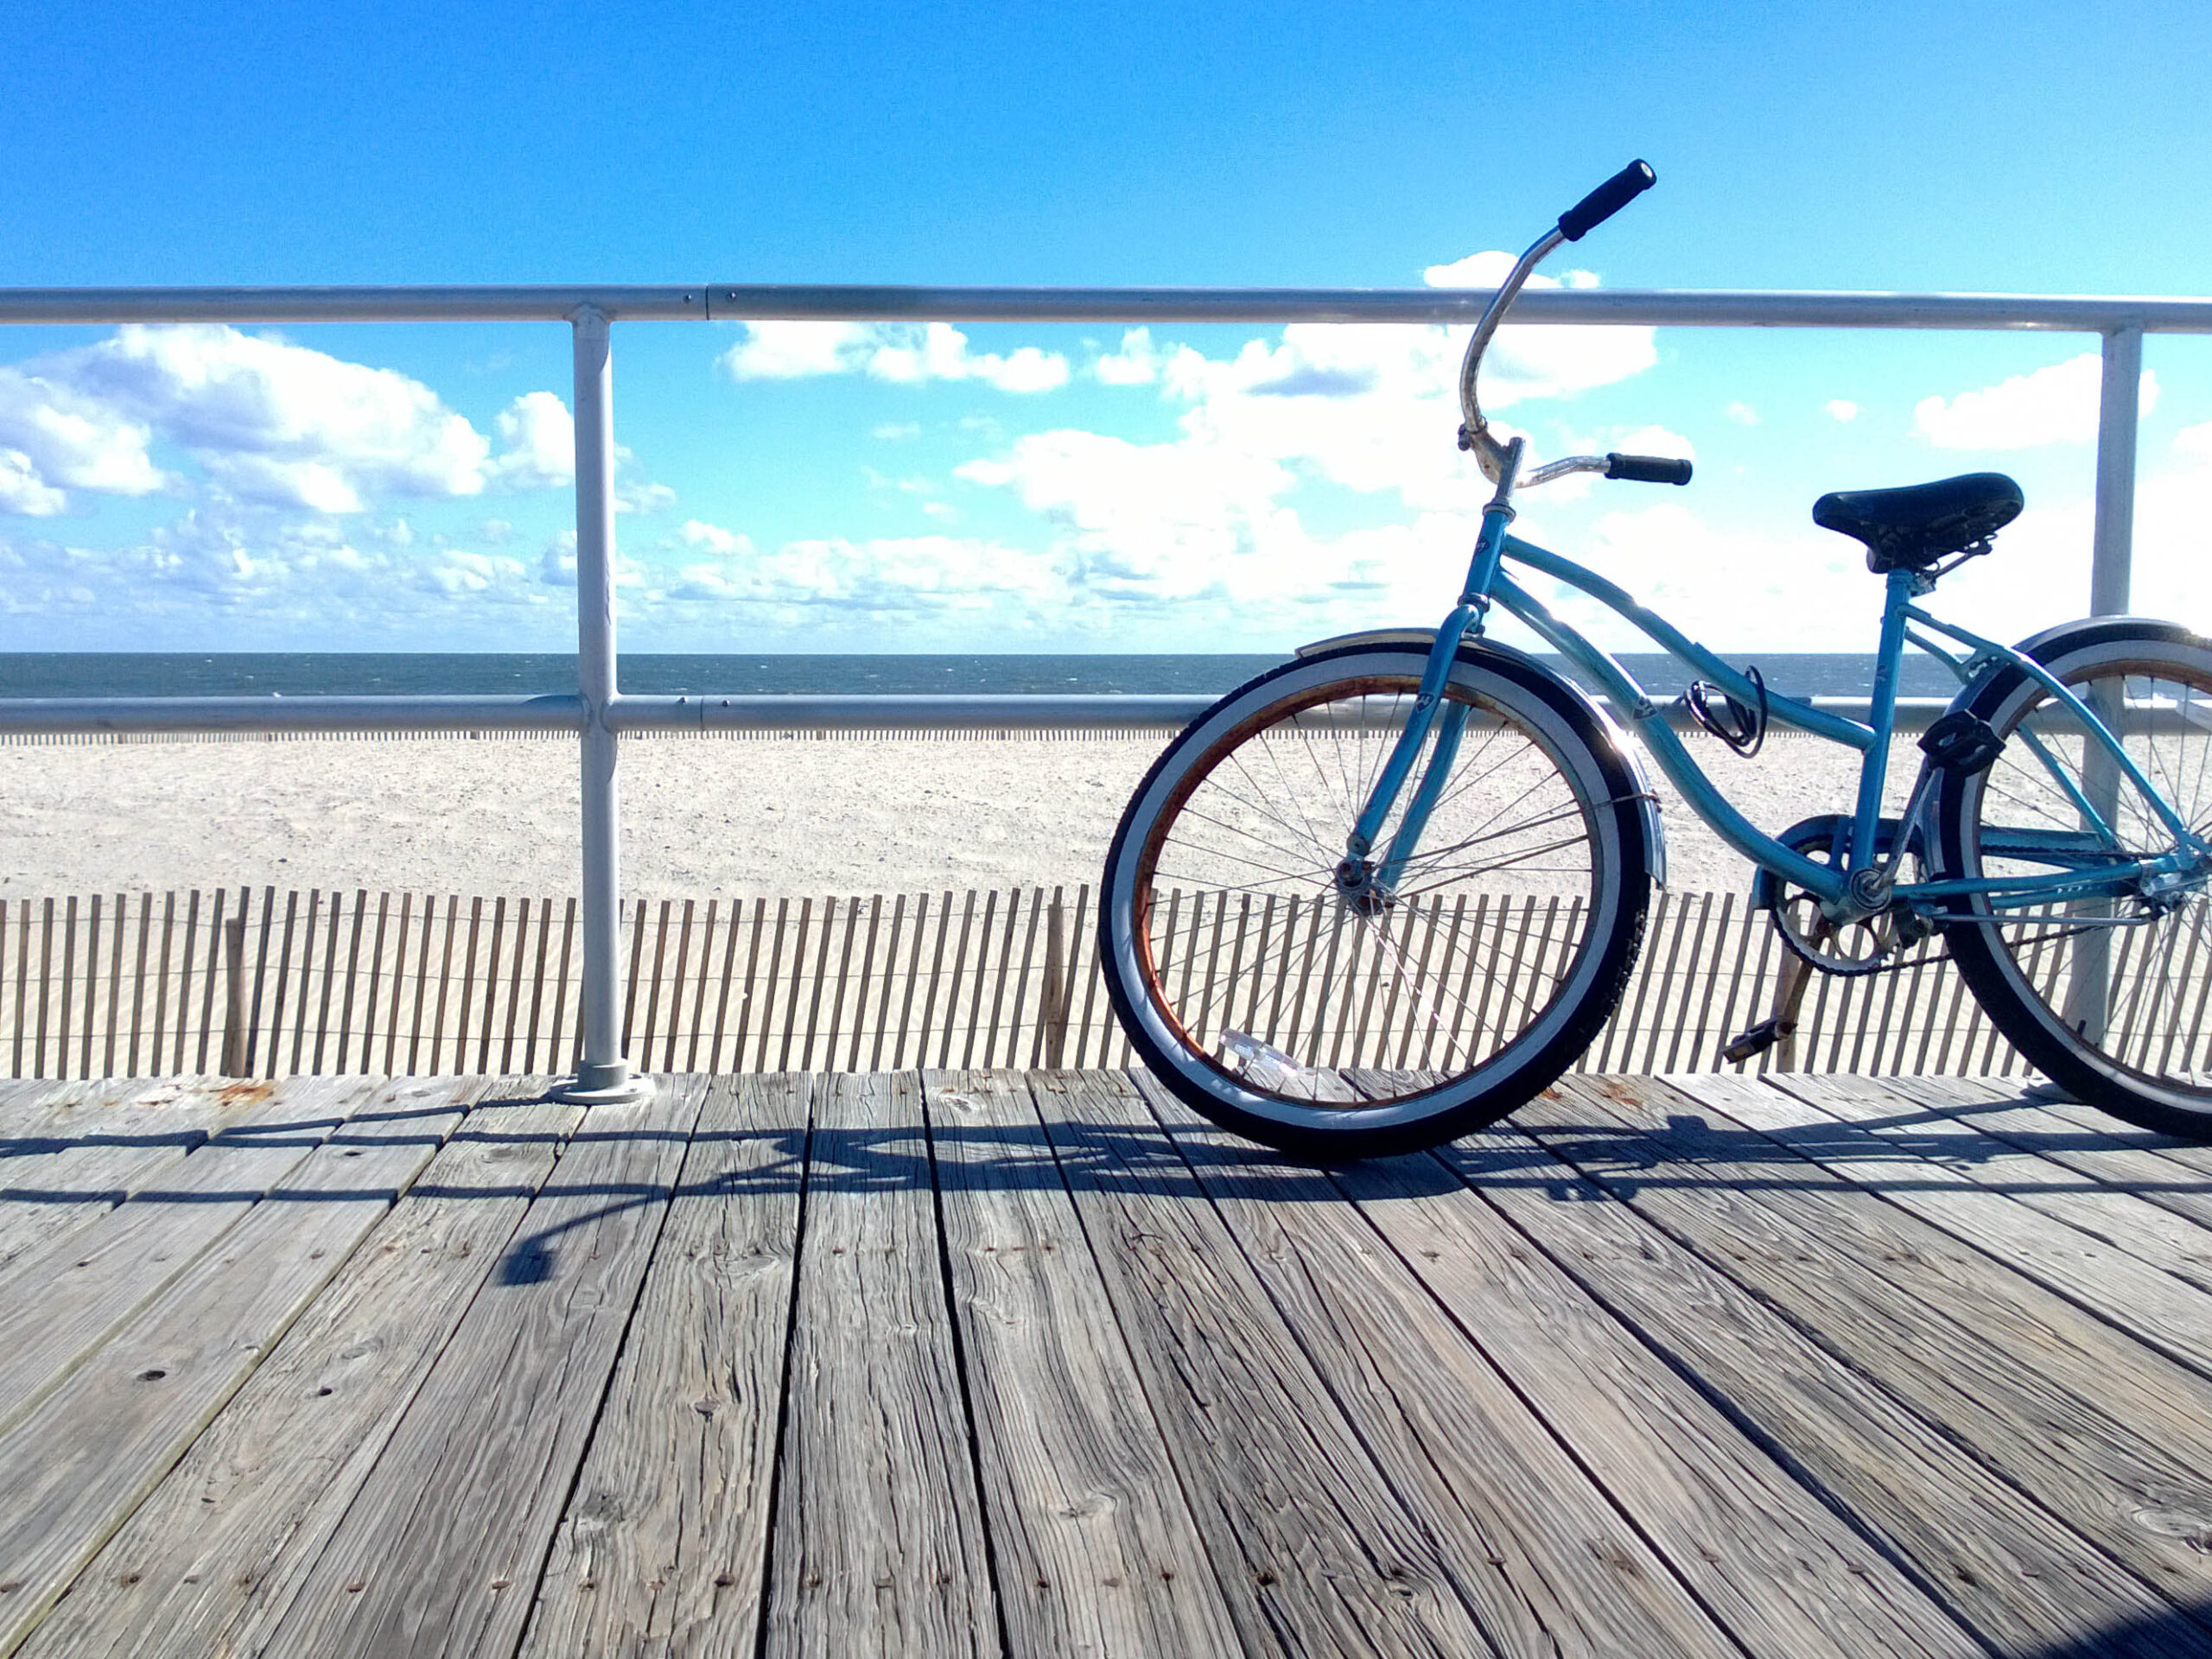 A Bike on the Boardwalk in Ocean City, NJ